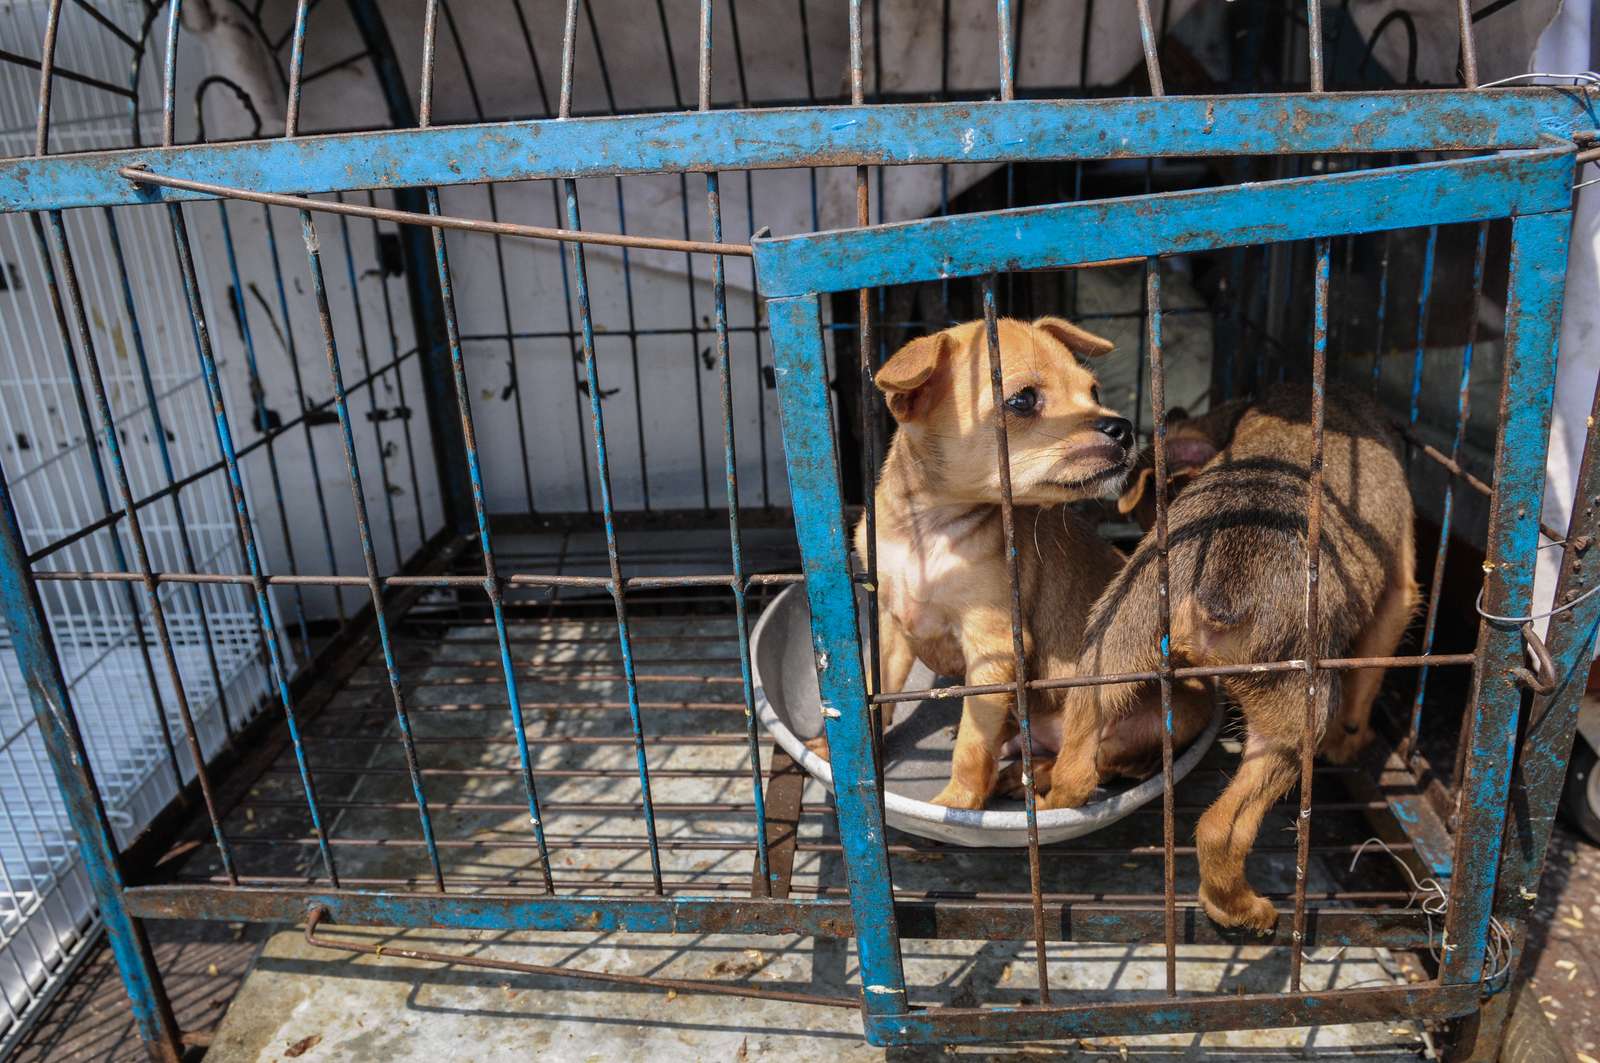 Hunde på thailandsk dyremarked. Foto: Jo-Anne McArthur / We Animals